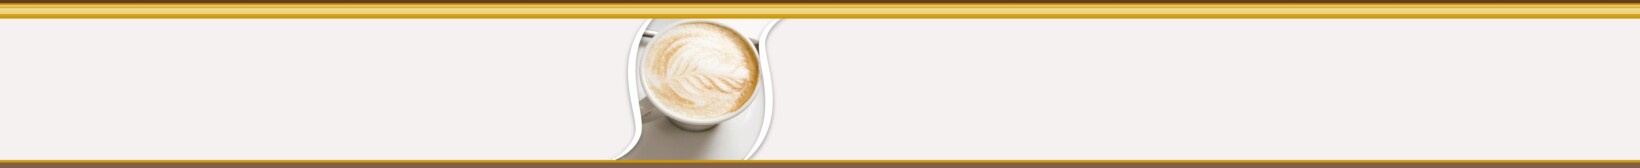 kaffeebeigaben-header